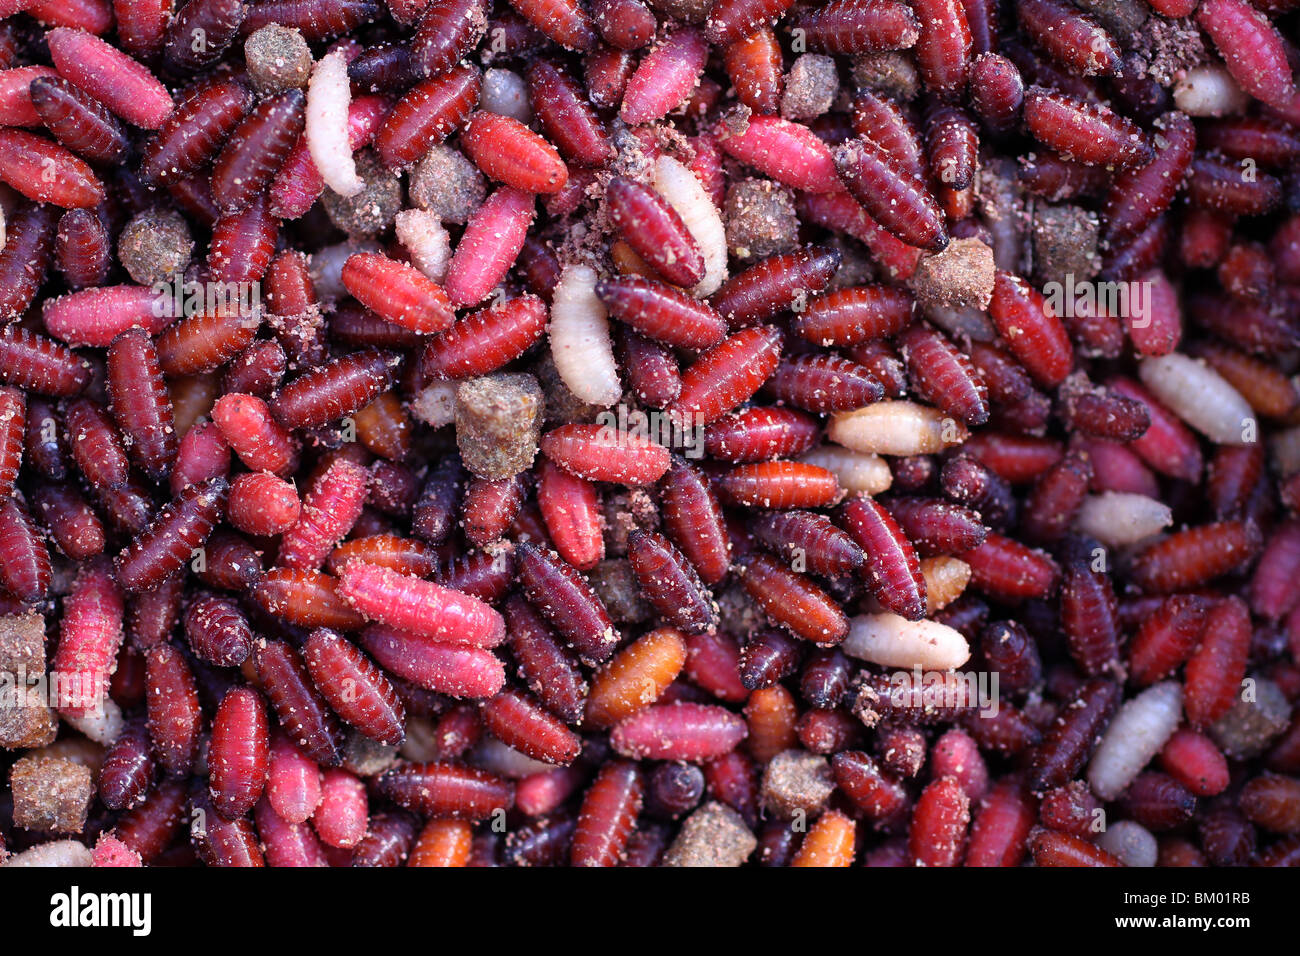 Vermi e agglomerati in forma di pellets in acqua fresca anglers bait box. Foto Stock